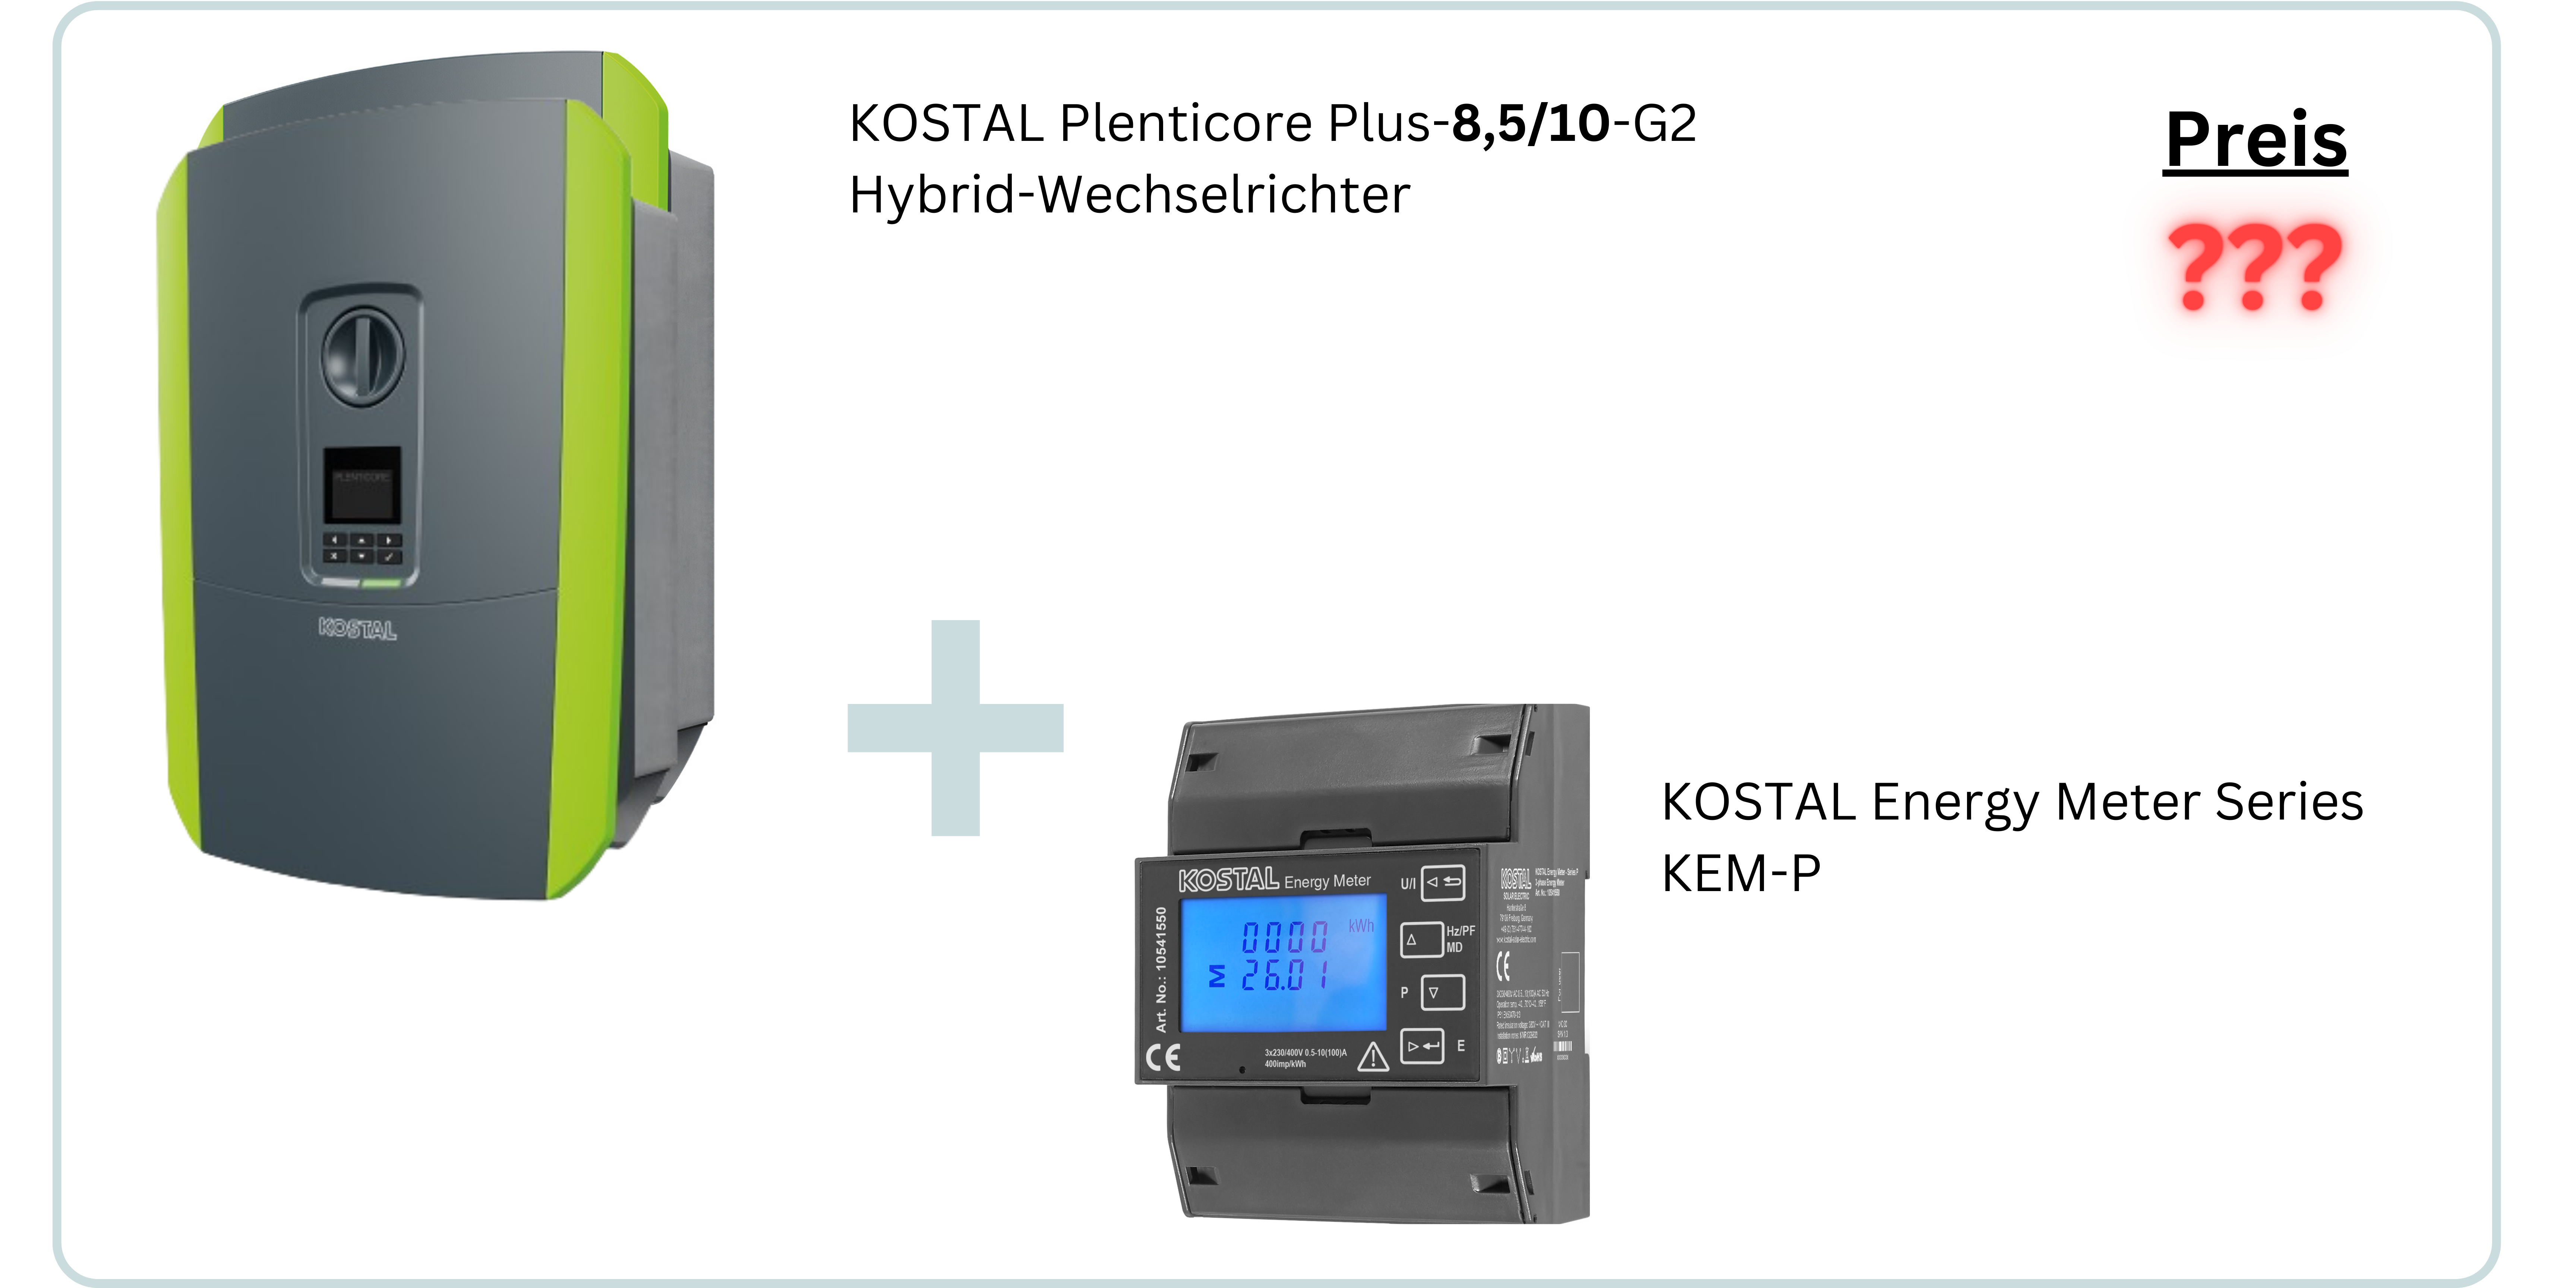 Das Kostal Paket beinhaltet den Kostal Plenticore Plus-G2 Hybrid-Wechselrichter und den Kostal Energy Meter Series KEM-P.